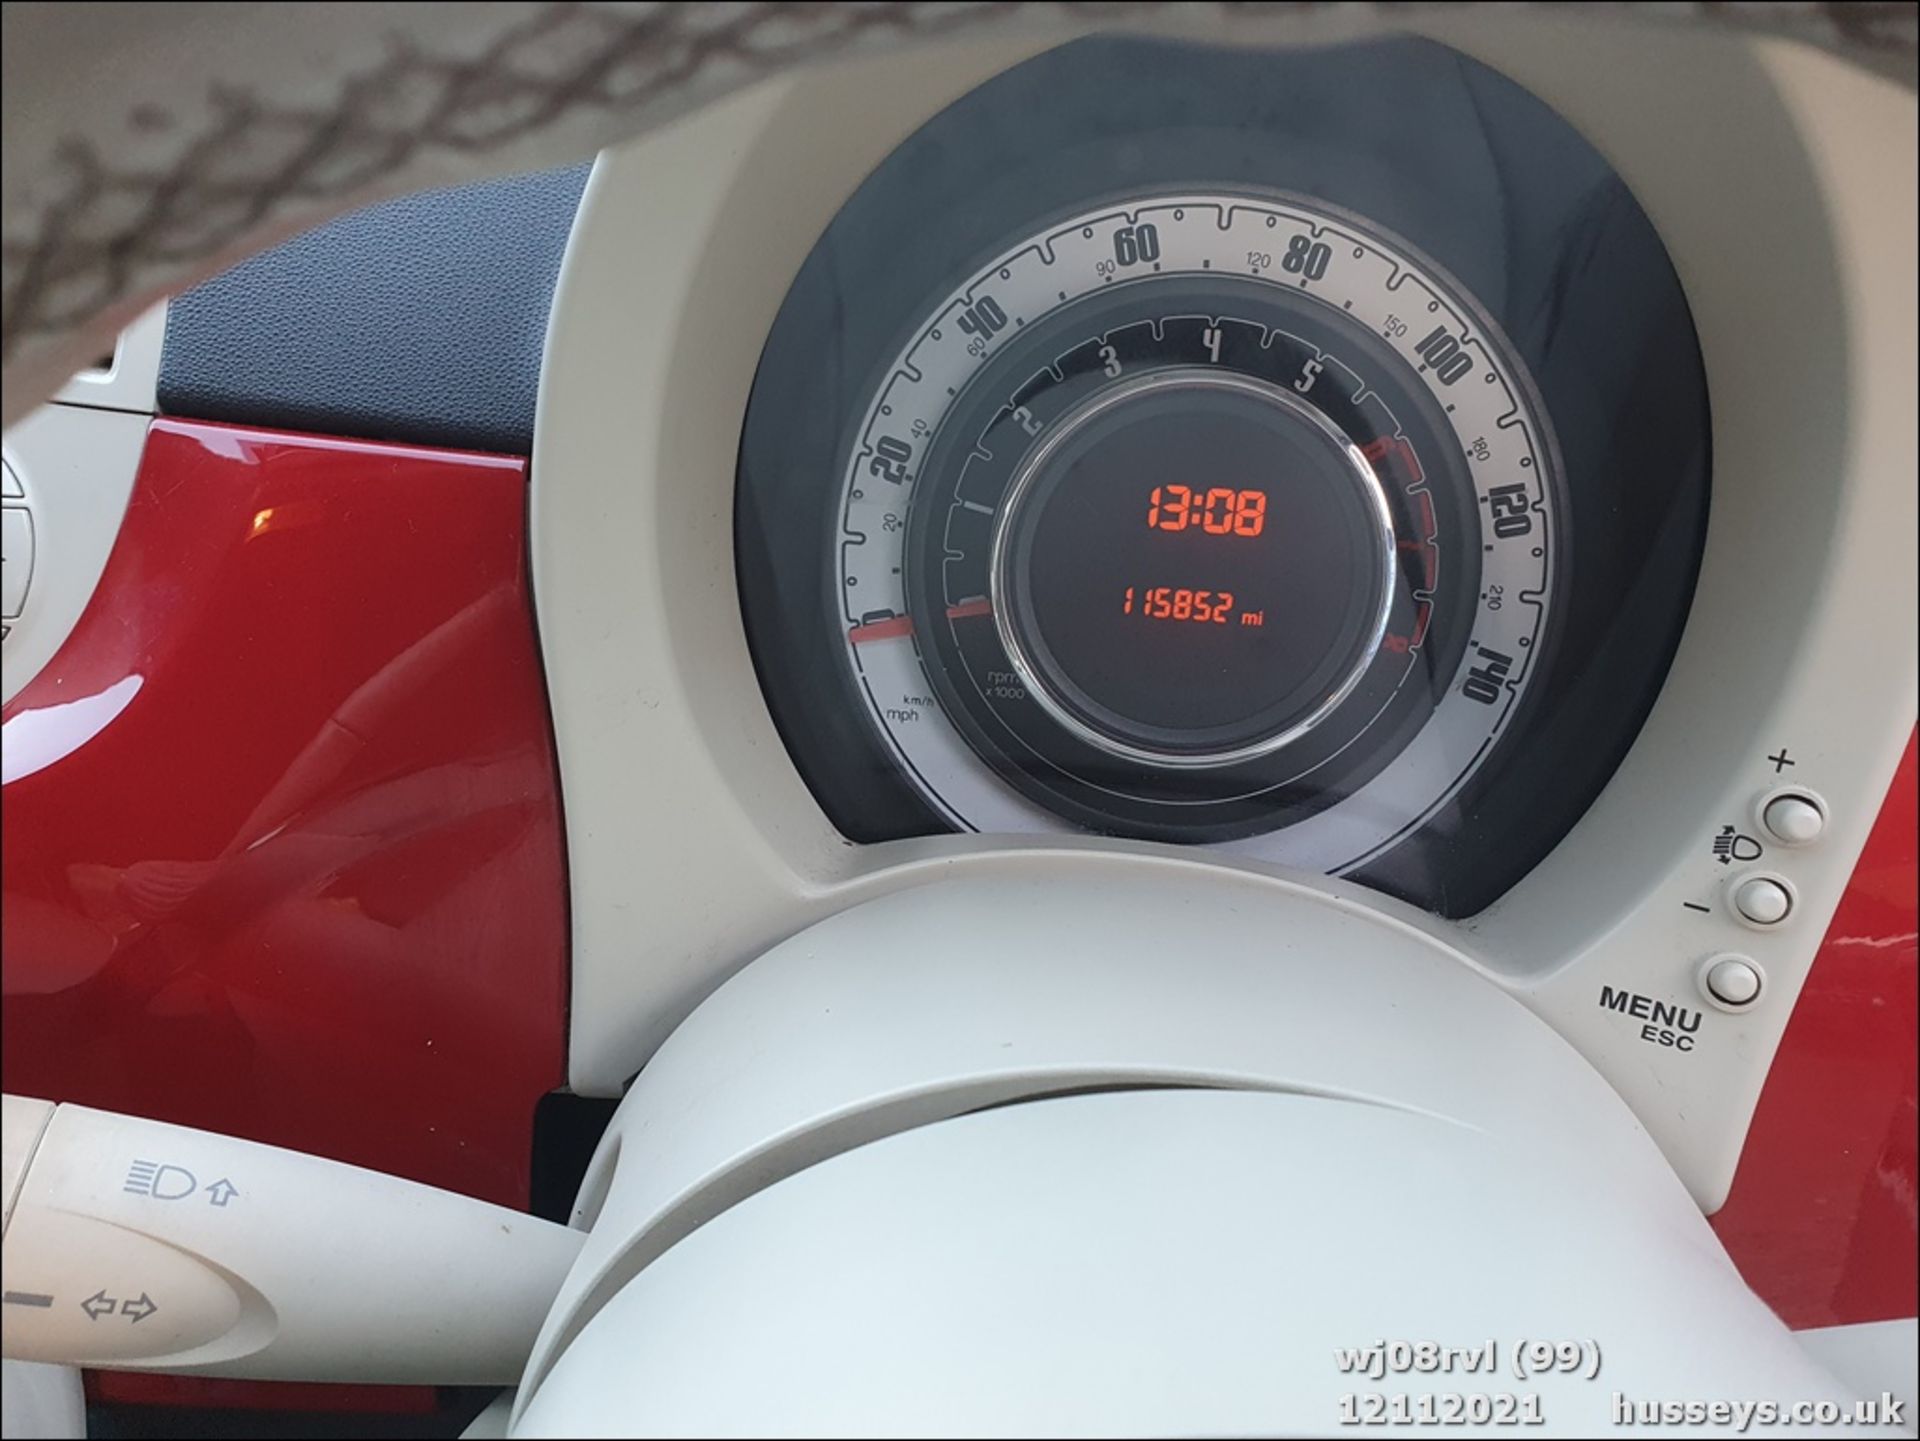 08/08 FIAT 500 POP RHD - 1242cc 3dr Hatchback (Red, 115k) - Image 25 of 25